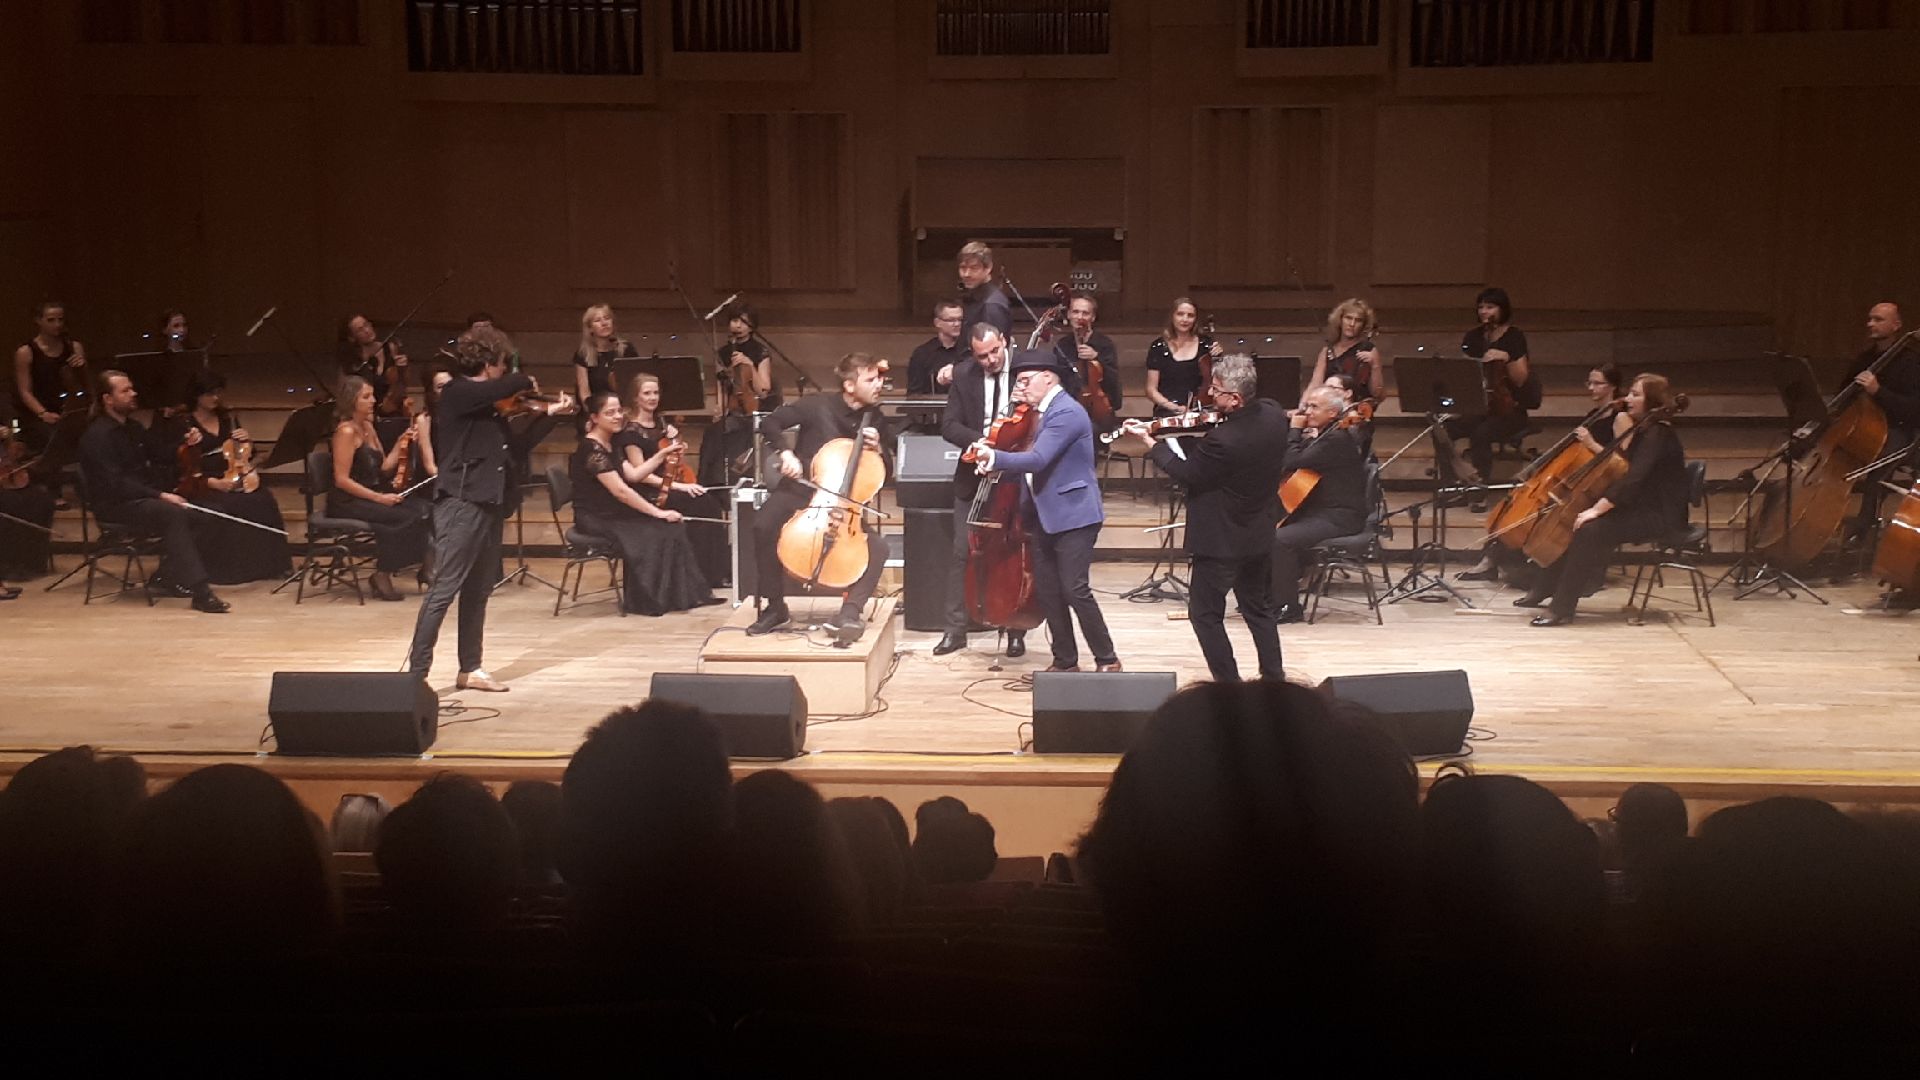 „Vołosi” w Filharmonii Opolskiej – pożegnanie lata w wielkim stylu